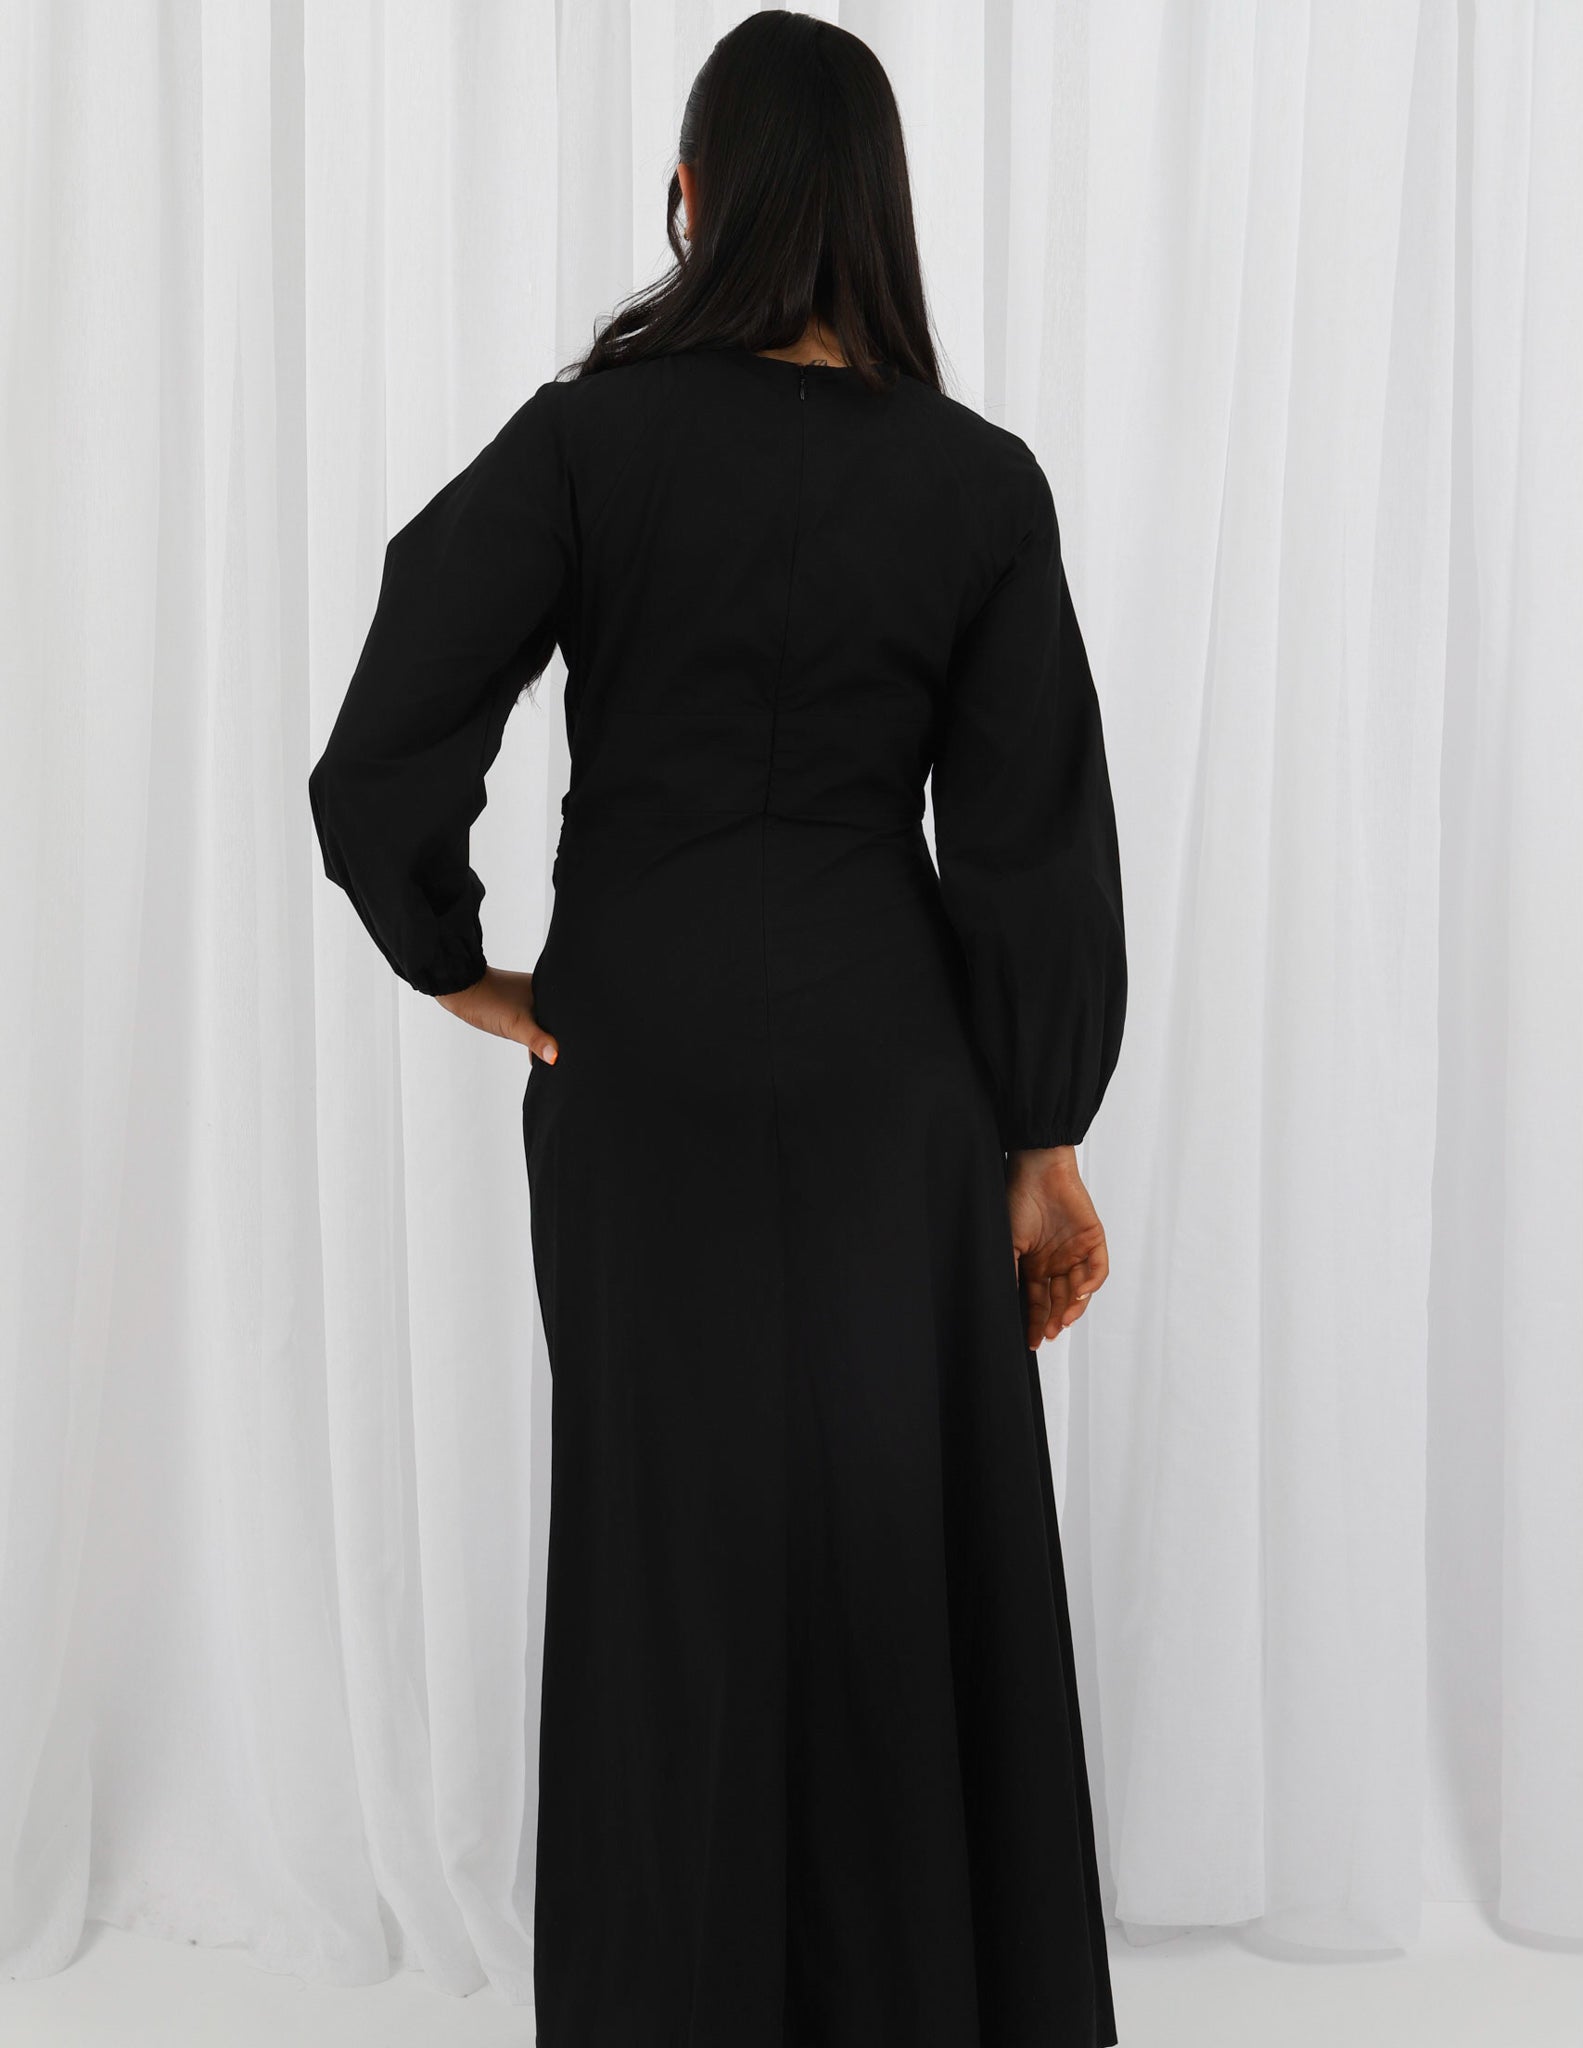 M7928Black-dress-abaya